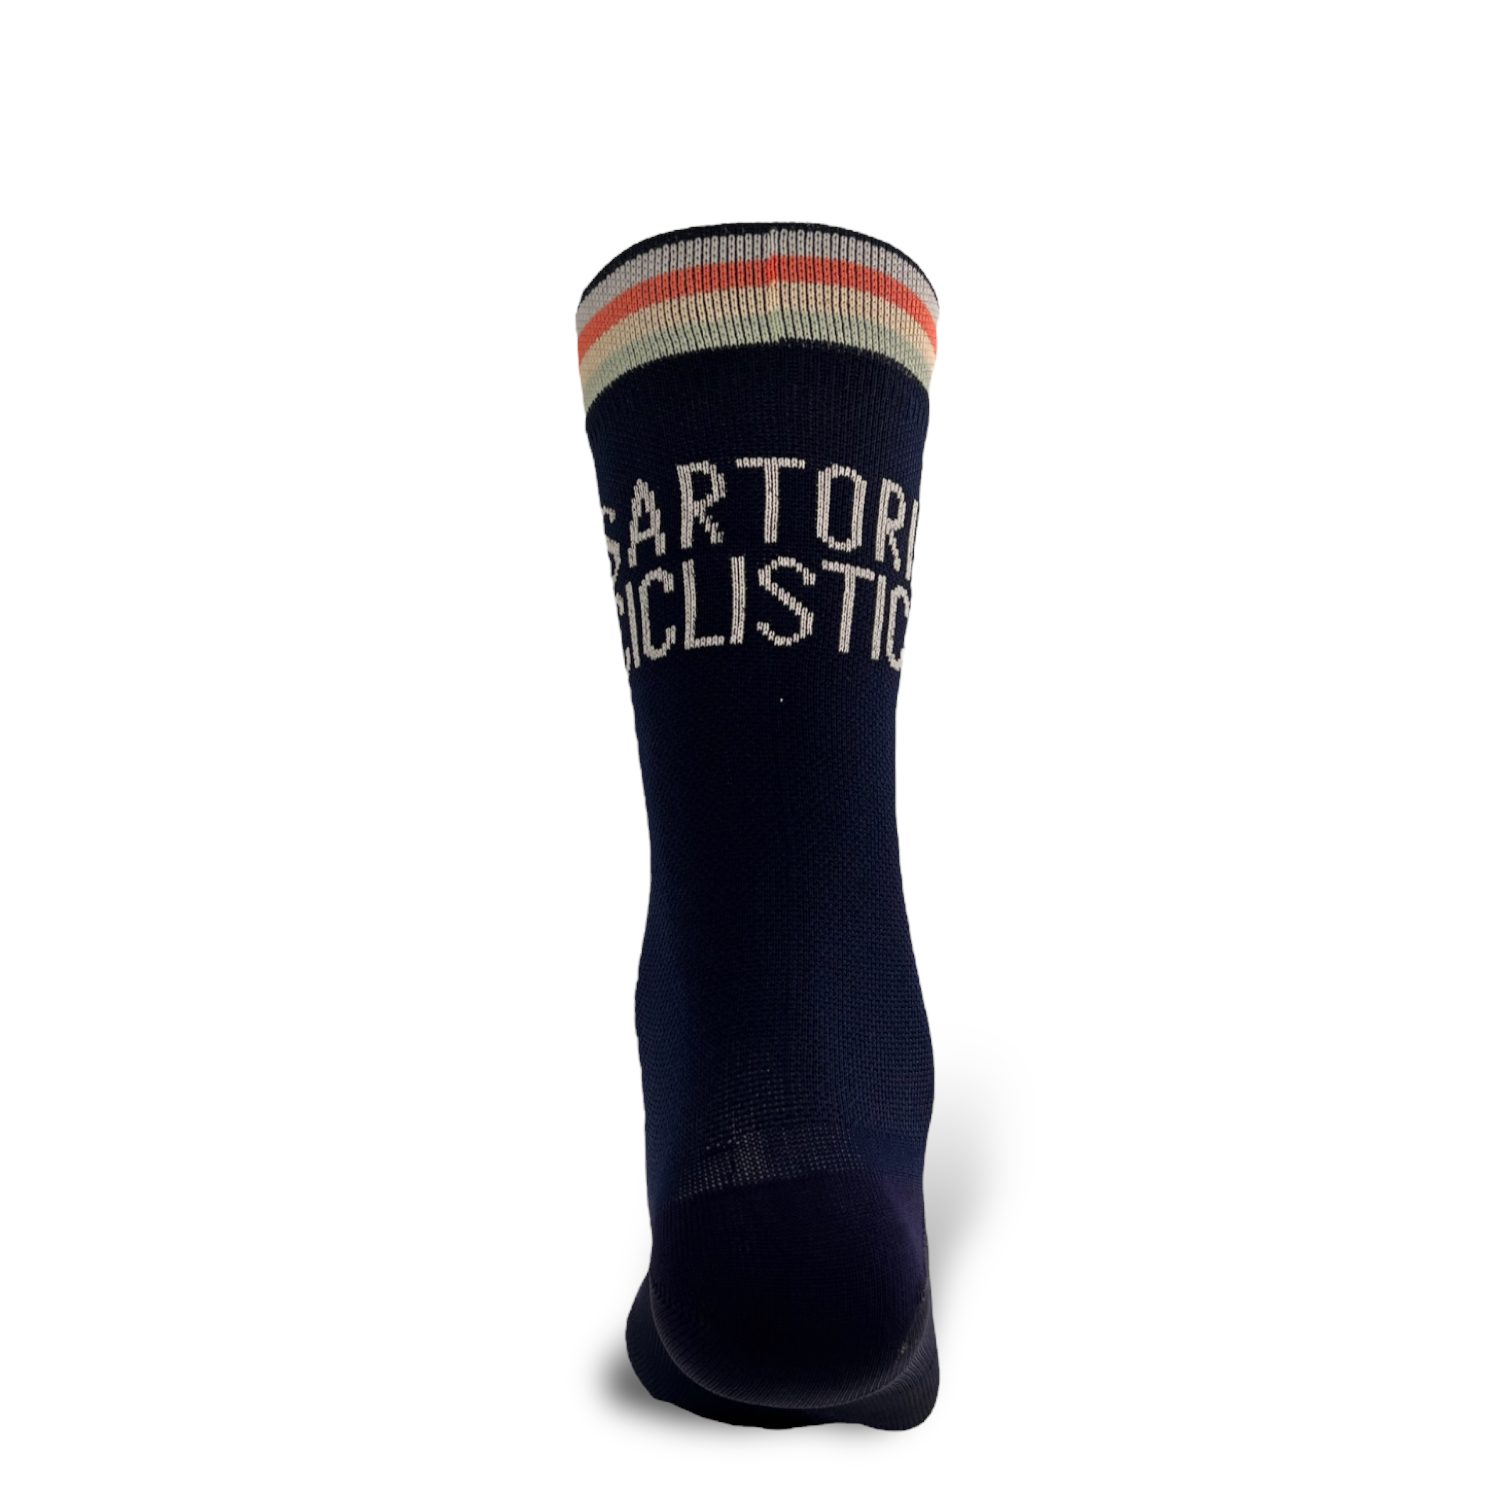 Blue navy Sartoria ciclistica socks